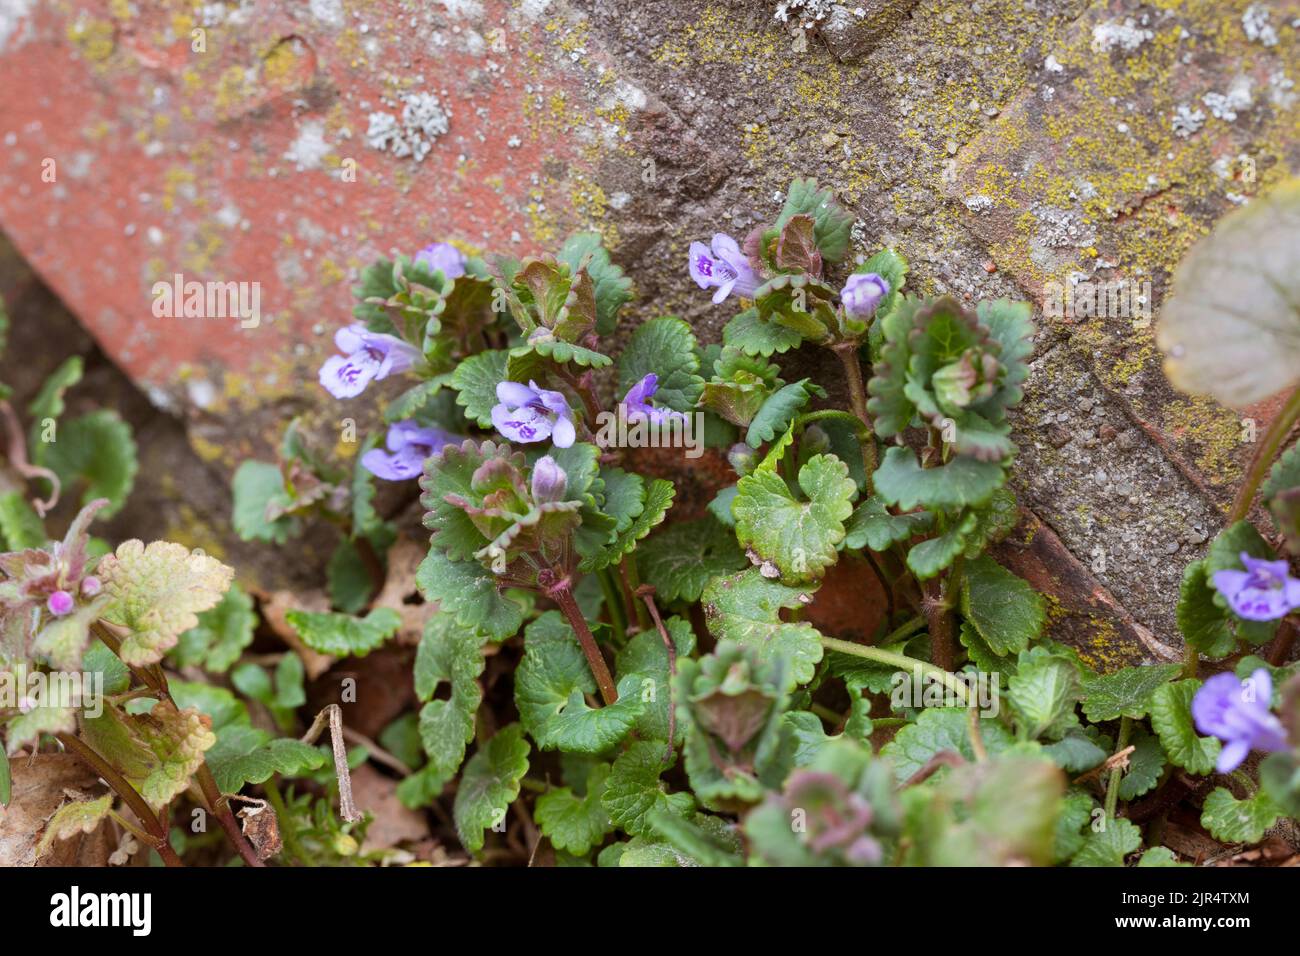 gill-sur-le-sol, lierre de terre (Glechoma hederacea), pousse dans l'écart de pavage, Allemagne Banque D'Images